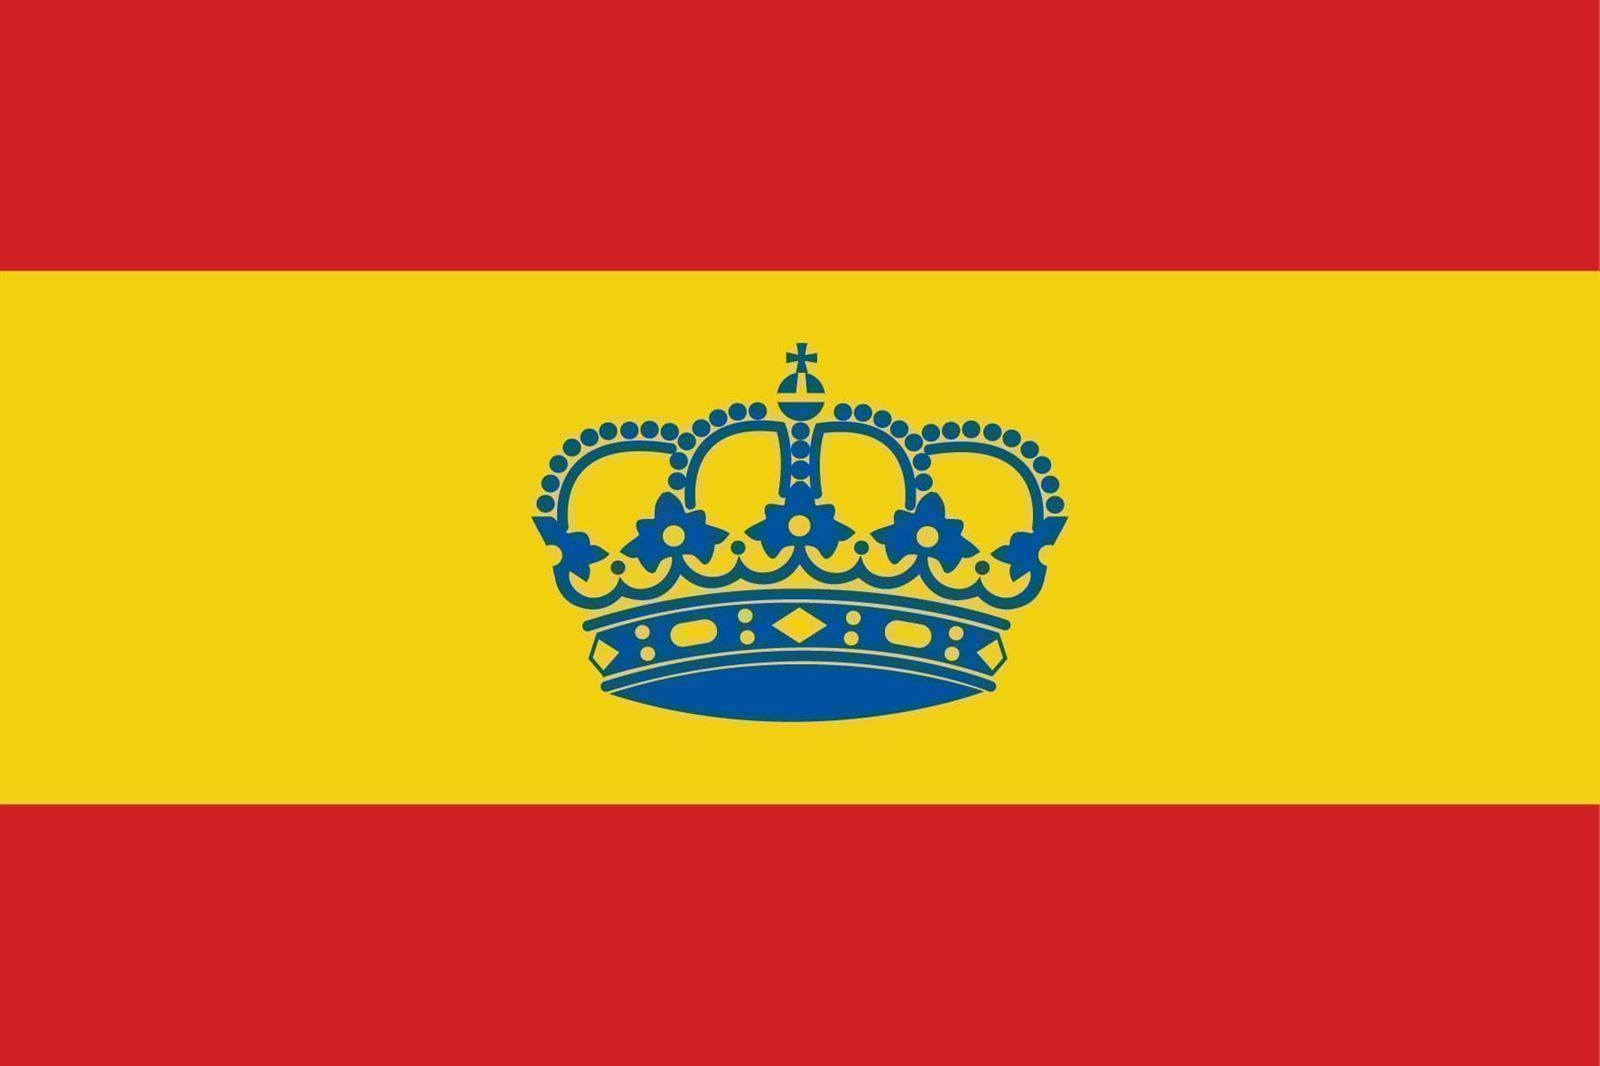 BANDERA ESPAÑOLA con Corona